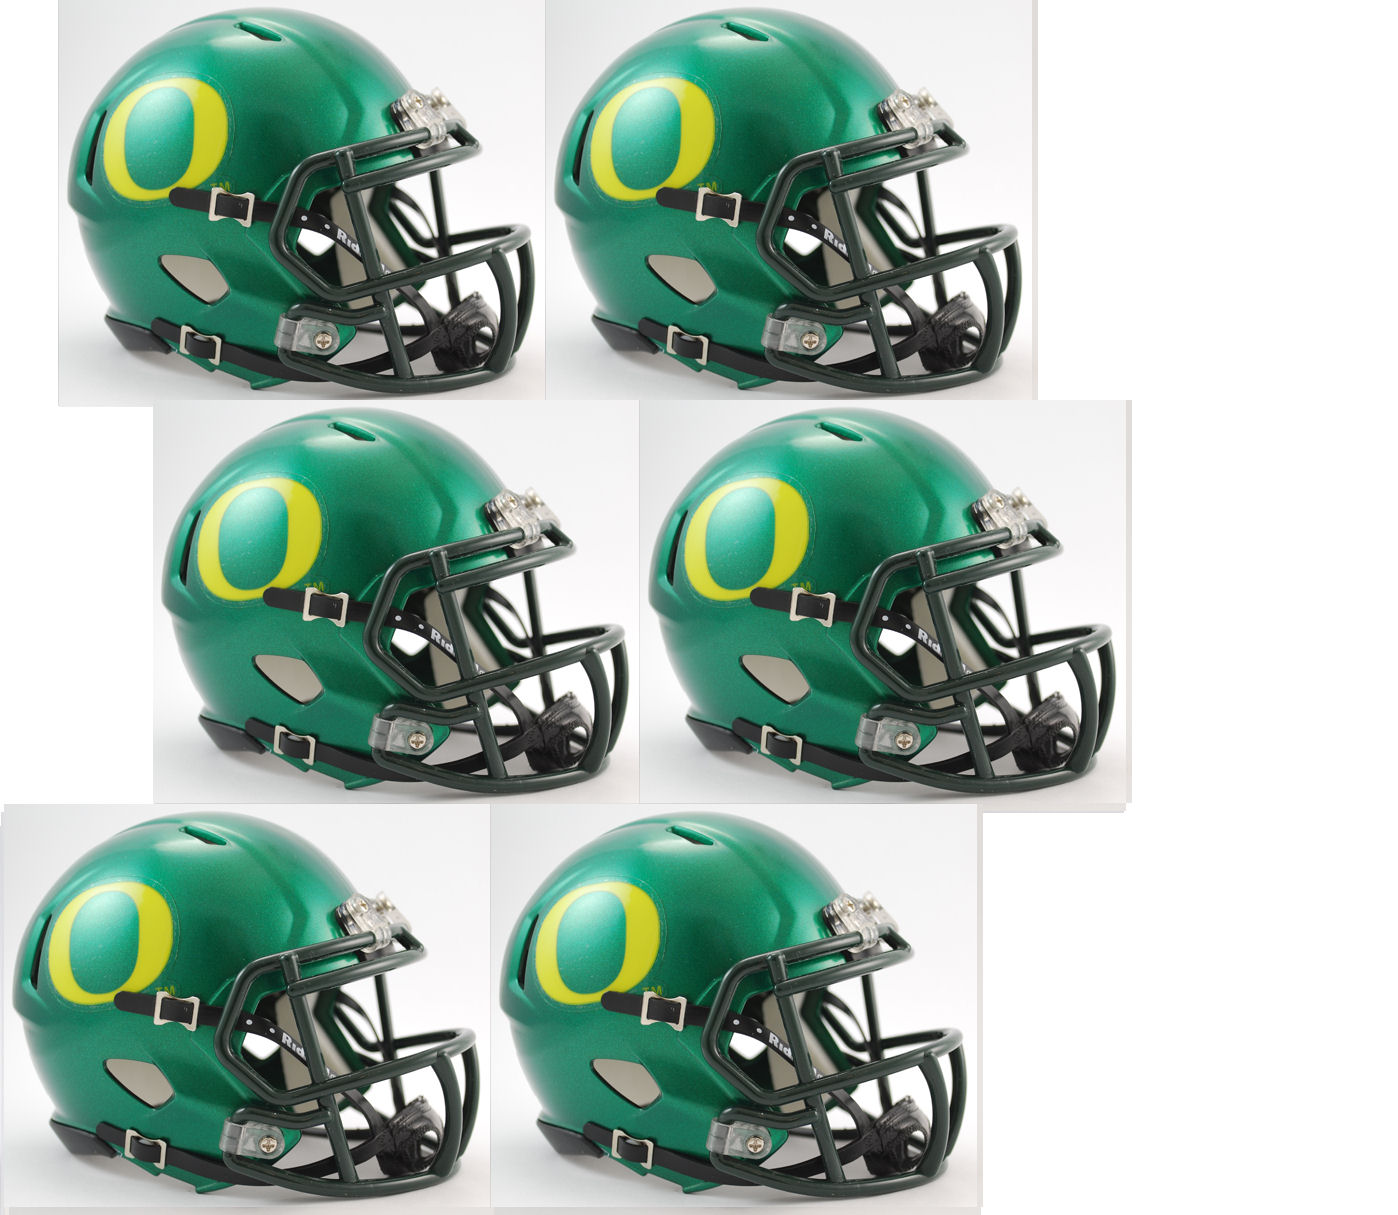 Oregon Ducks NCAA Mini Speed Football Helmet 6 count